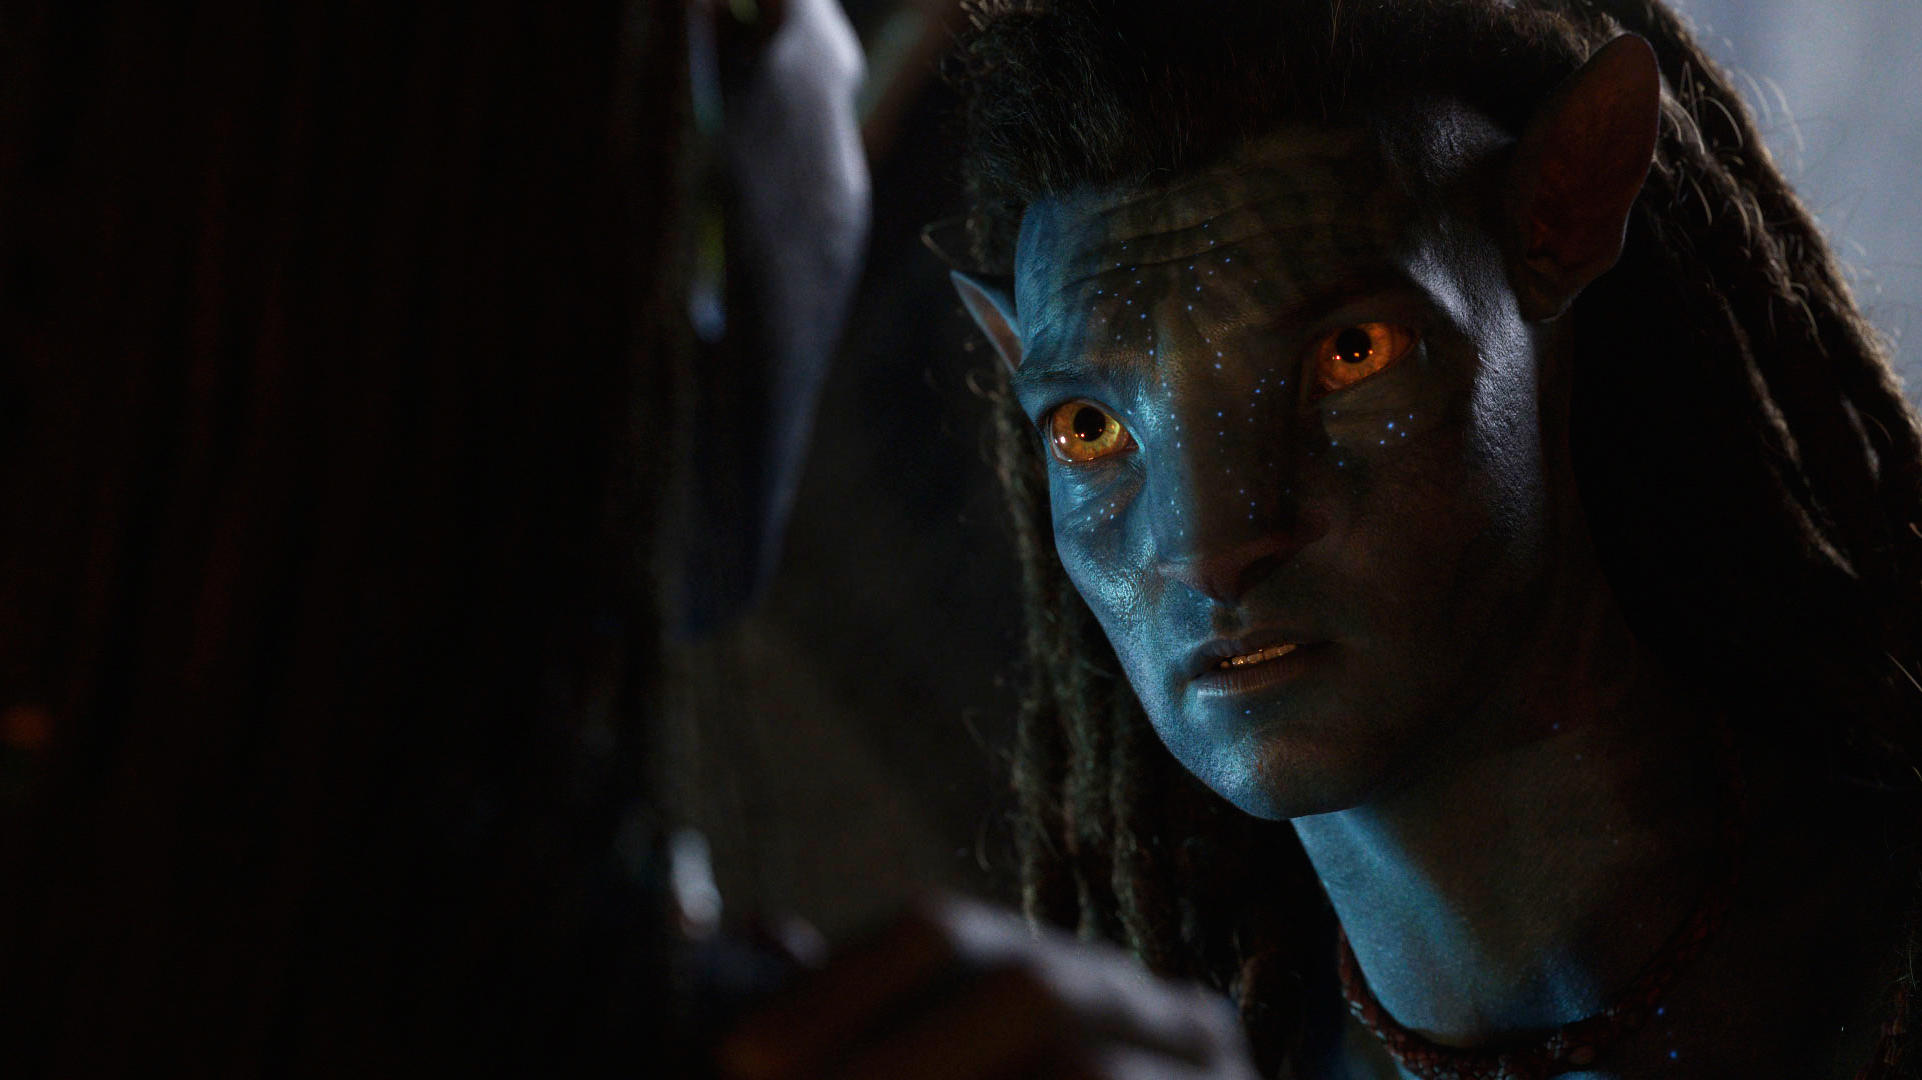 10.05.2022, USA, ---: Sam Worthington (als Jake Sully, l) und Zoe Saldana (als Neytiri, r) in einer Szene aus «Avatar: The Way of Water» (undatiert). Rund 13 Jahre nach dem Original-Film soll die Fortsetzung Mitte Dezember 2022 in die Kinos kommen. F